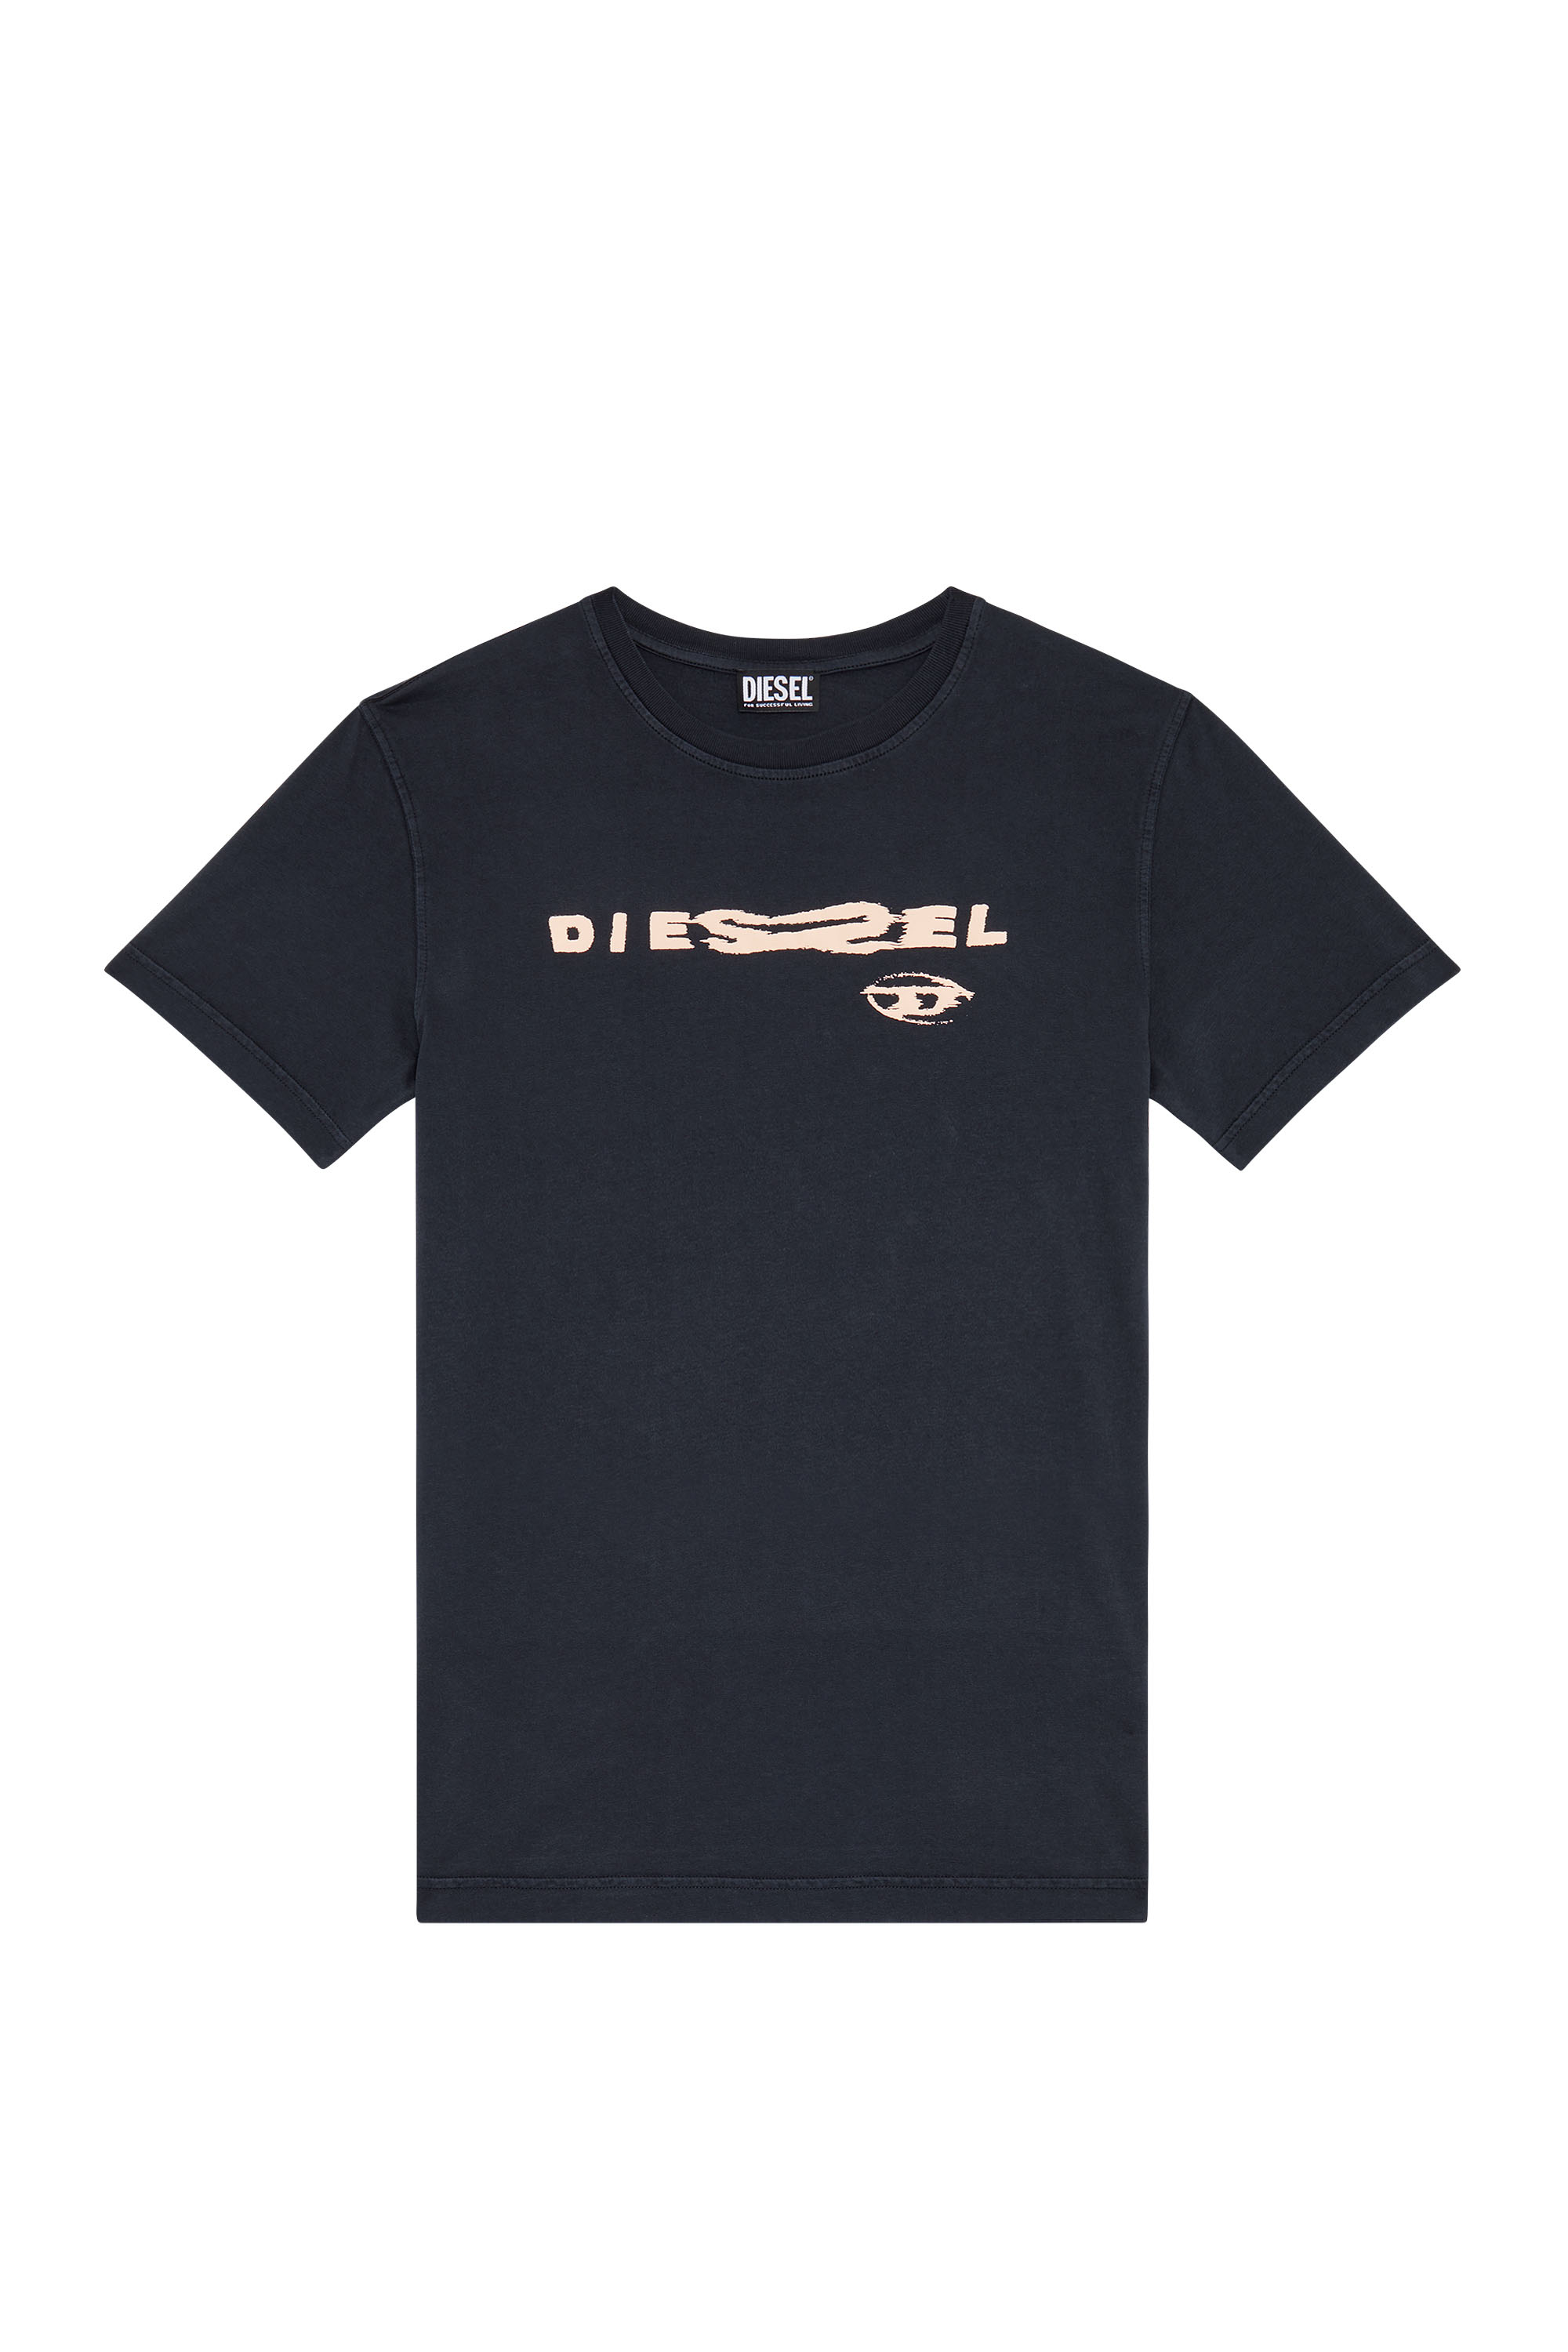 Diesel - T-DANNY, Black - Image 1